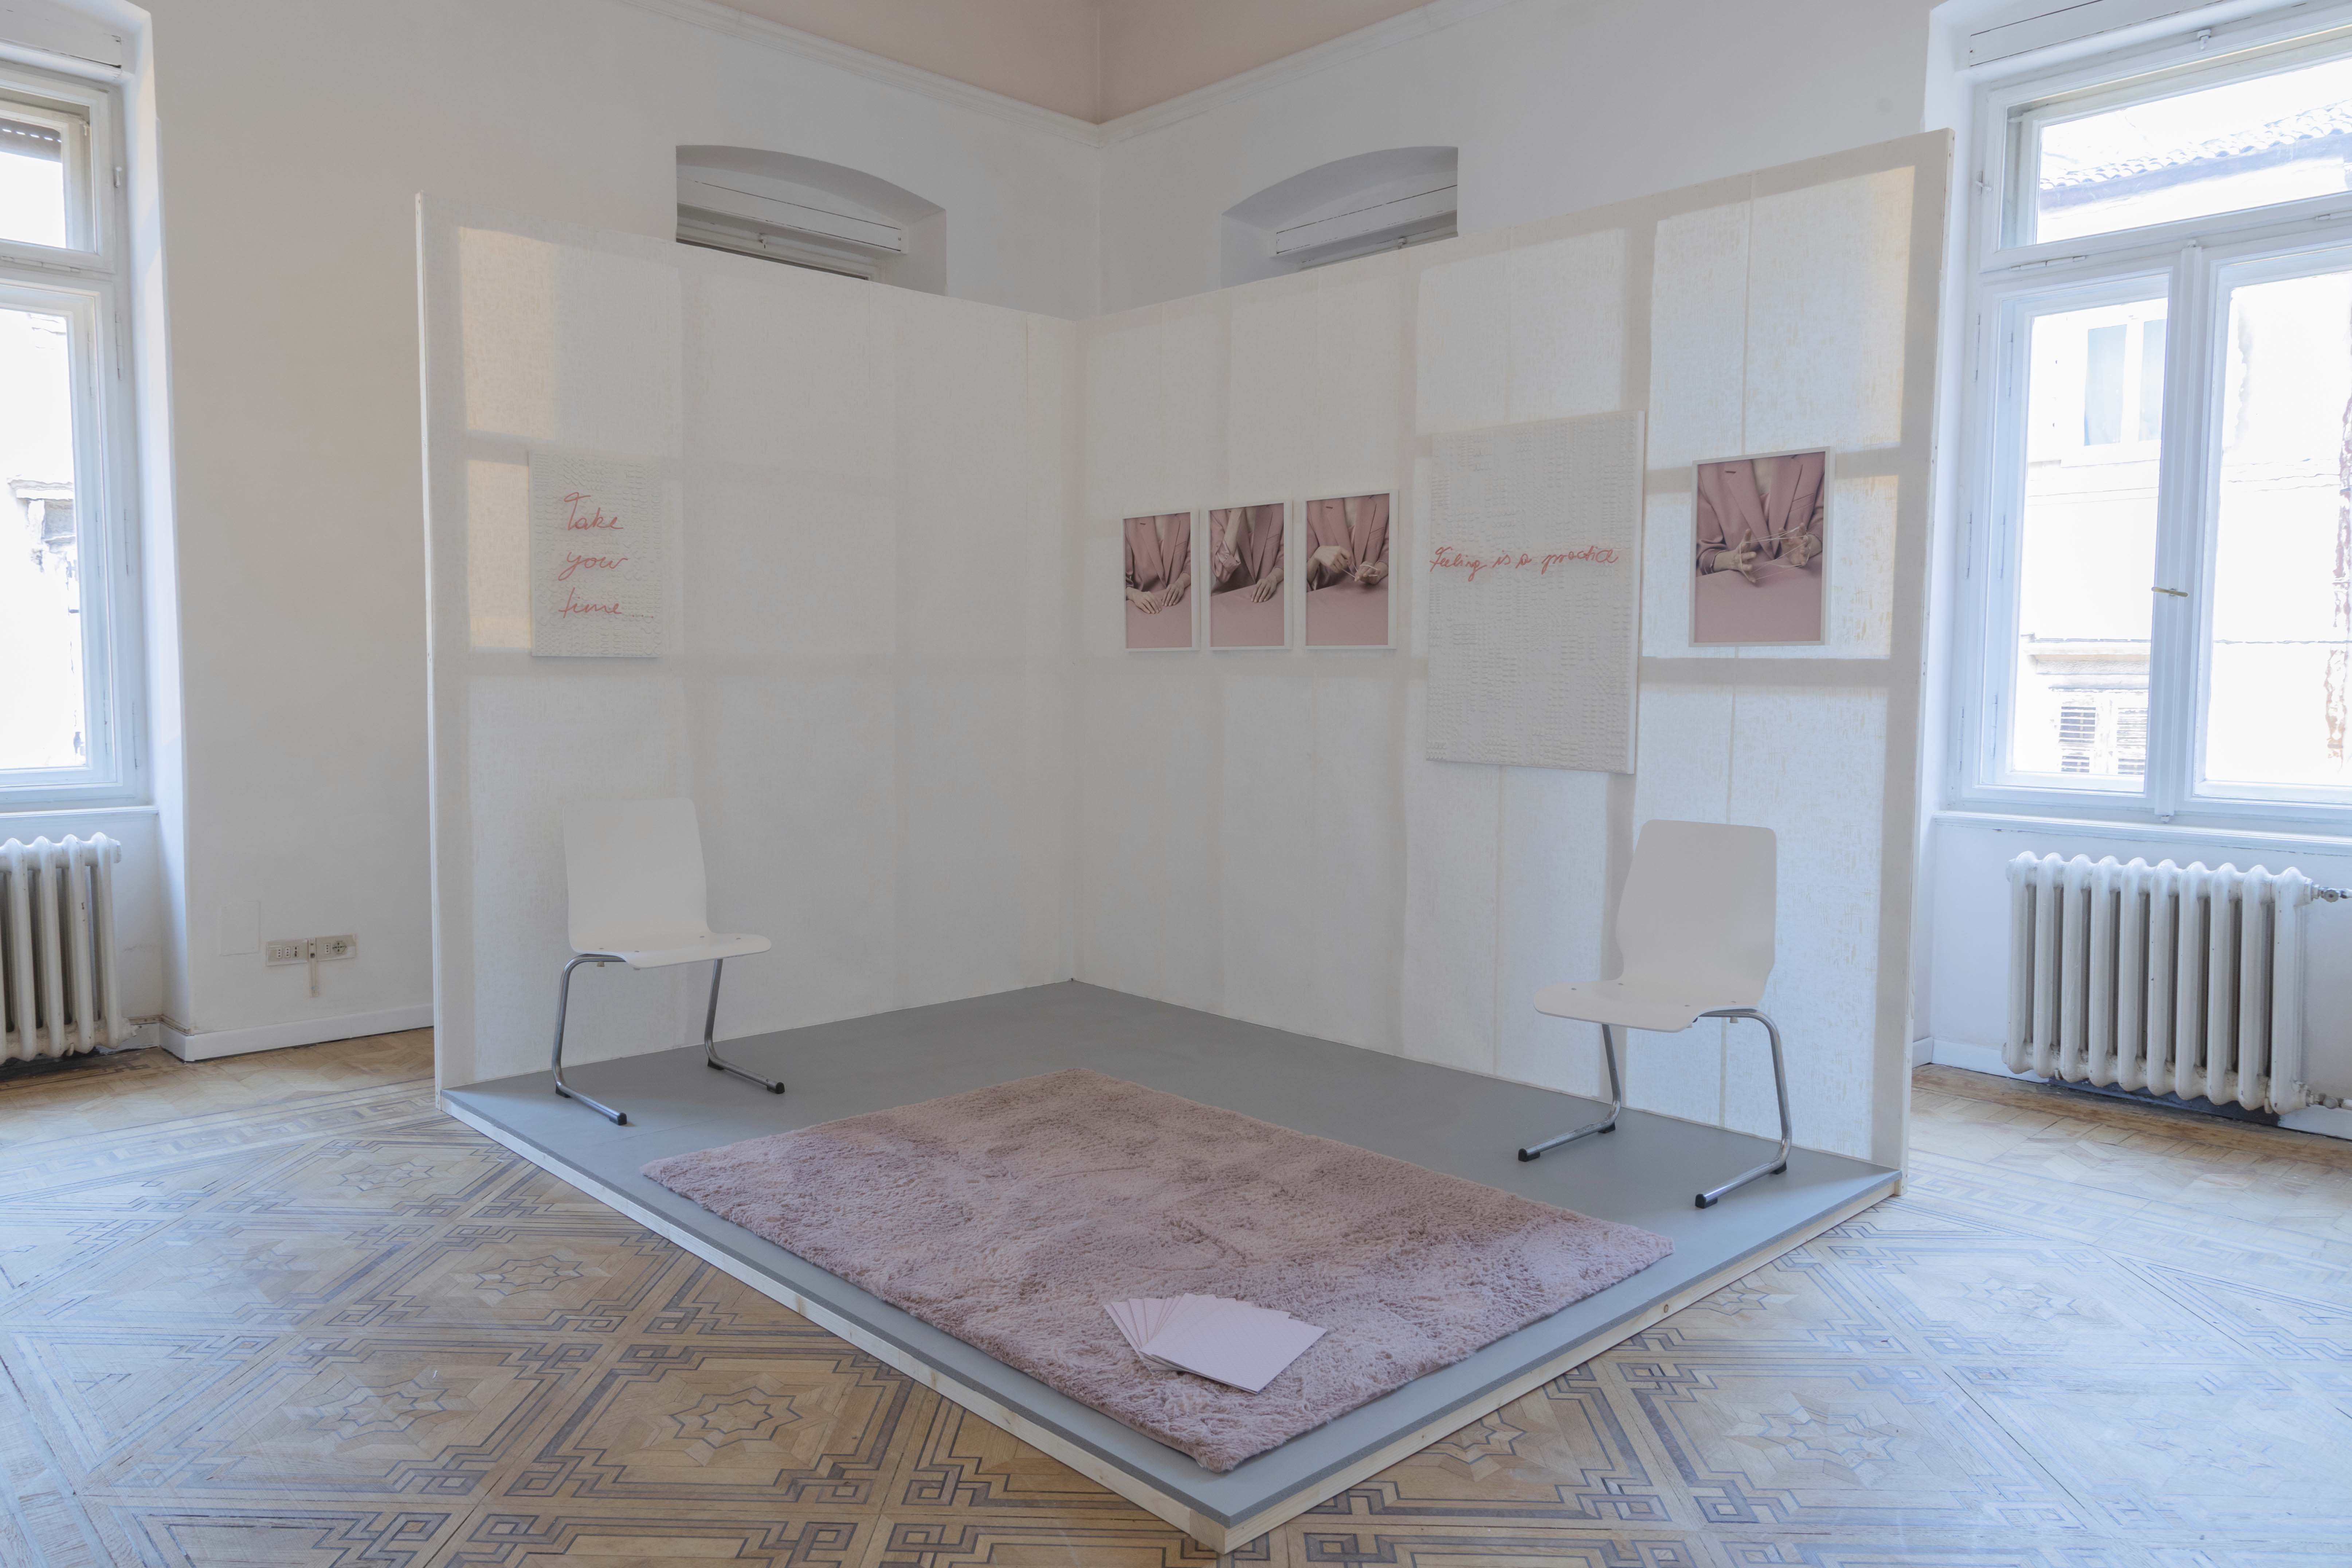 Installation view - Promesse du bonheur #1 | Heimo Zobernig, Luisa Hübner, Veronika Suschnig